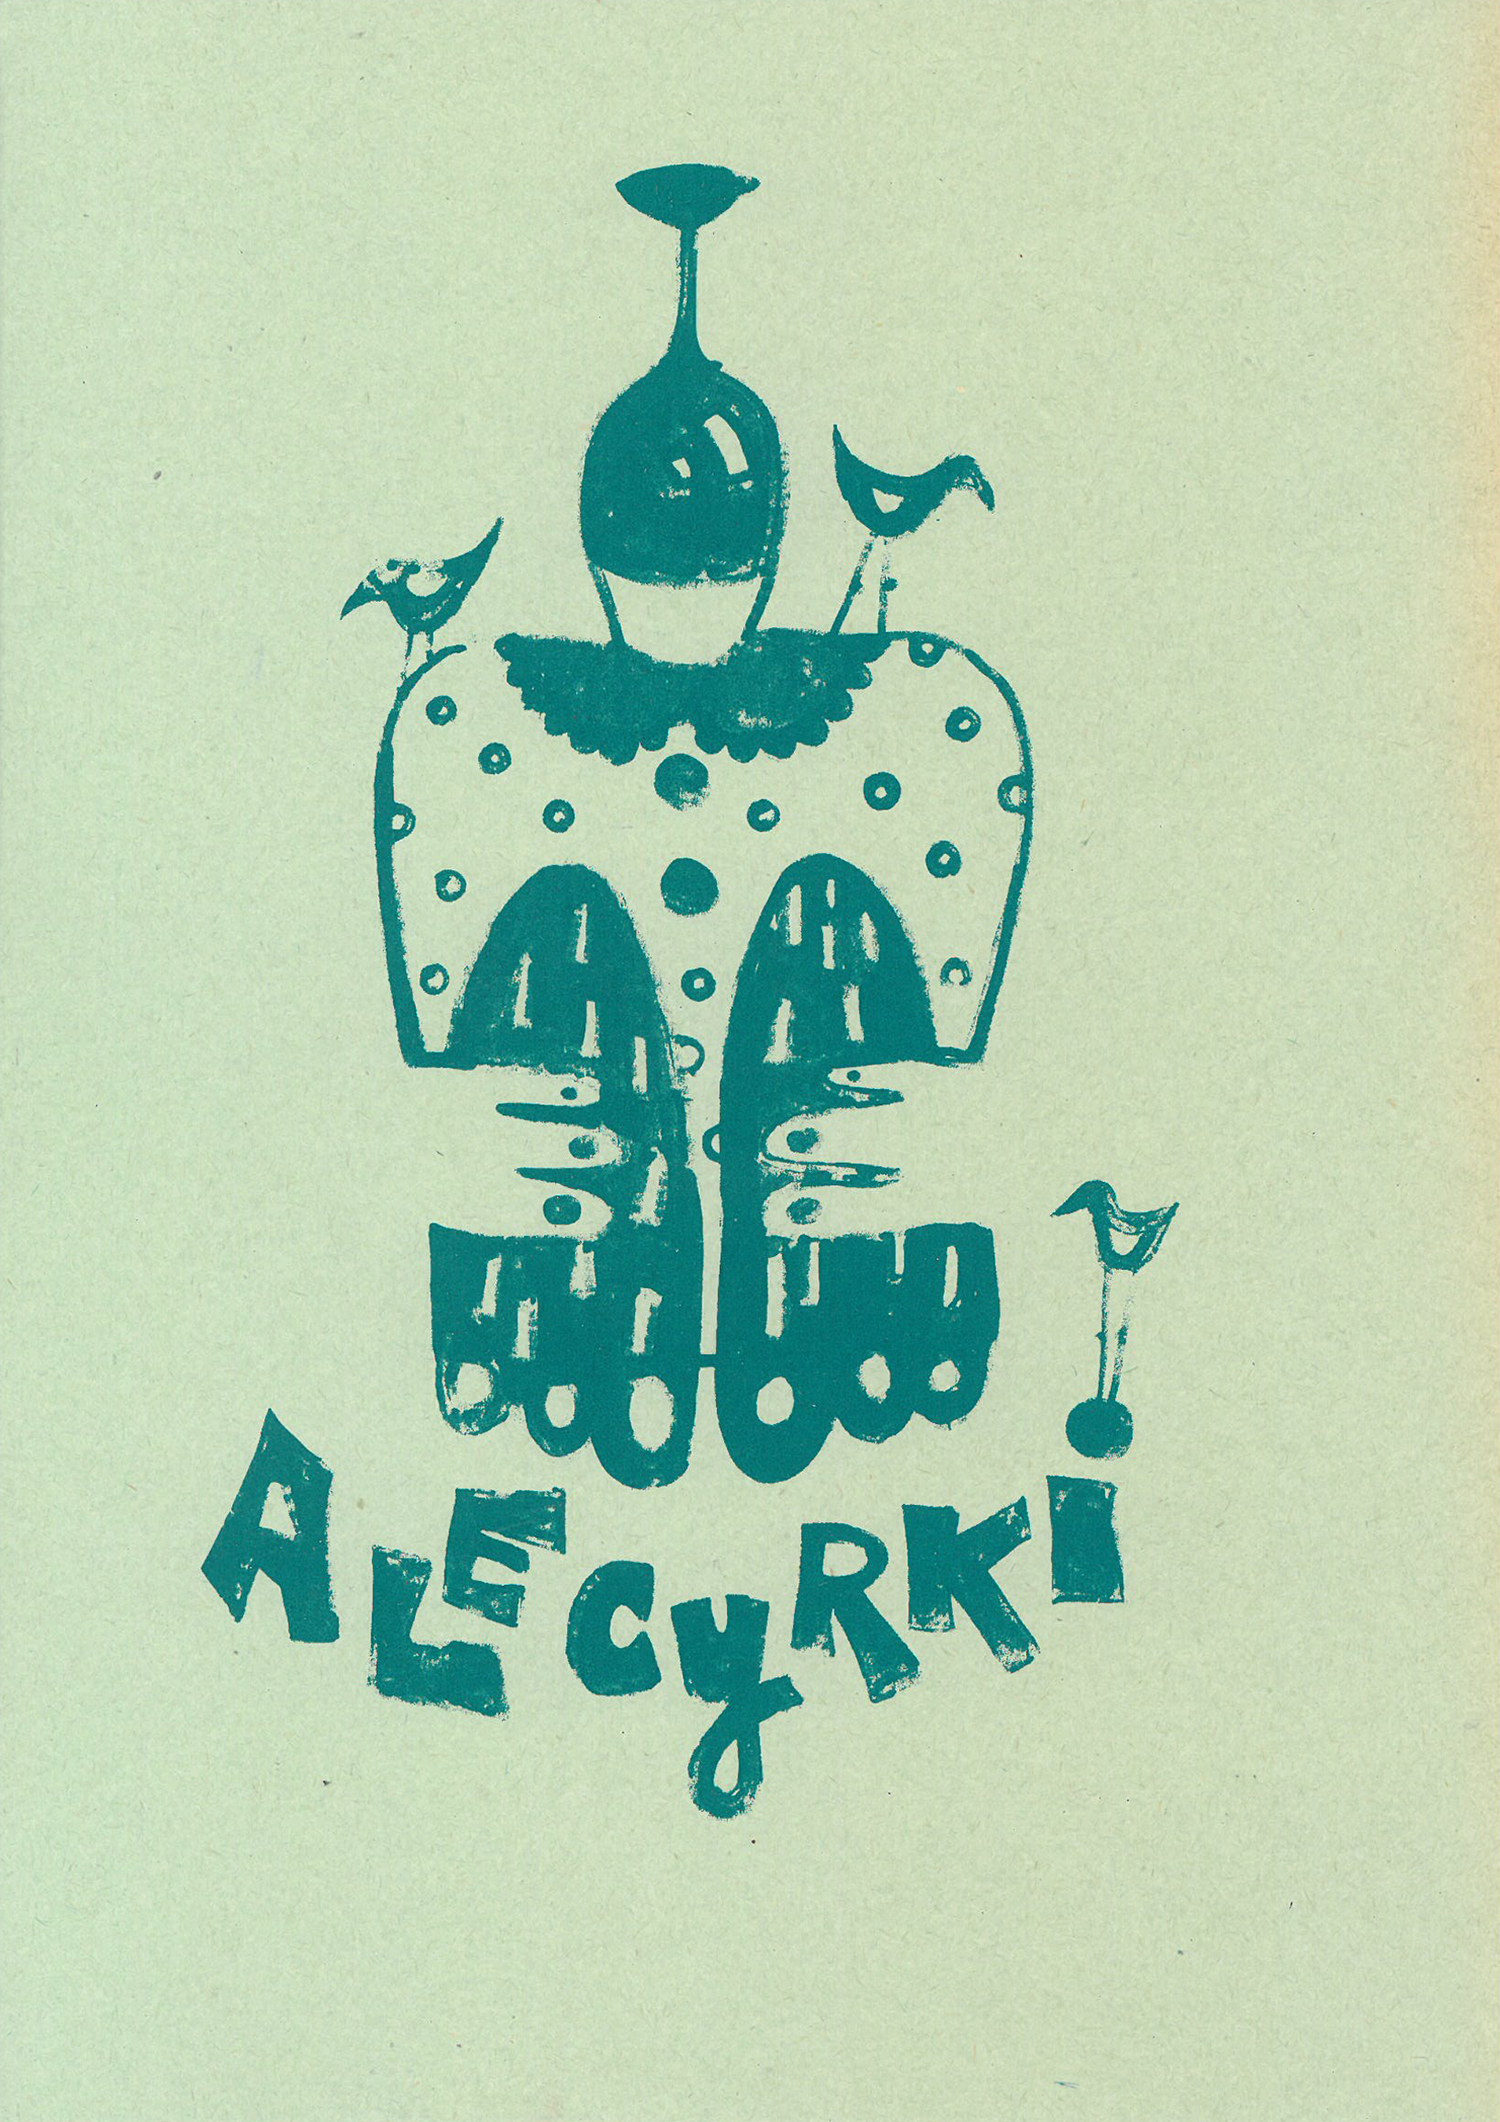 Grafika przedstawia postać z głową w kształcie wazonu/kielicha, trzy sylwetki ptaków oraz napis w dolnej części ,,Ale cyrki’’. Grafika w kolorze turkusowym na zielonym tle